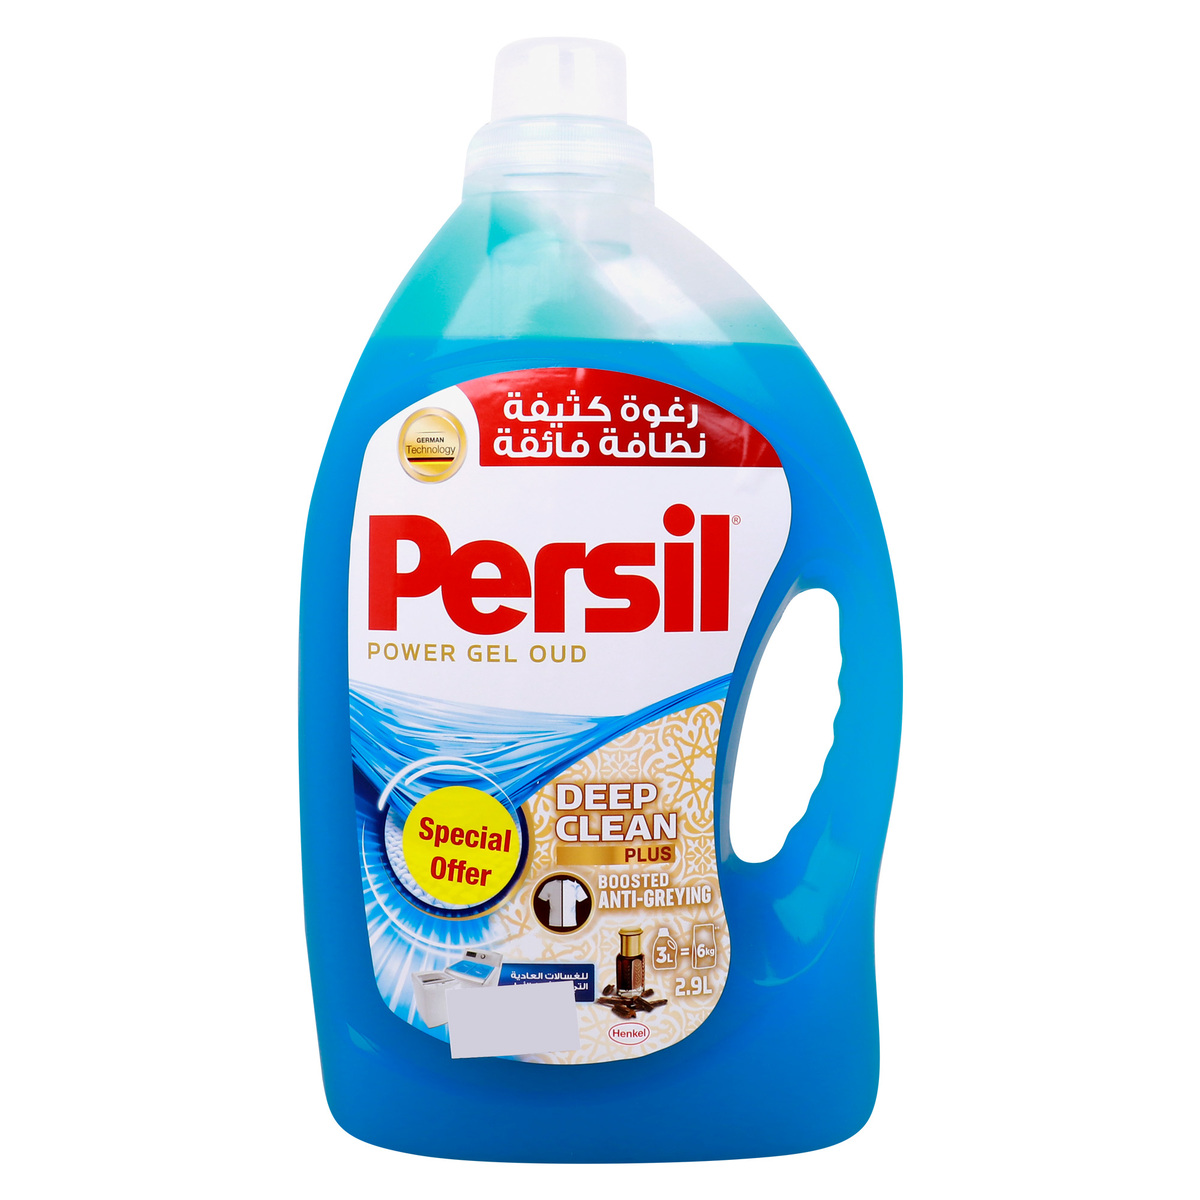 Persil Deep Clean Plus Oud Power Gel Value Pack 2.9 Litres